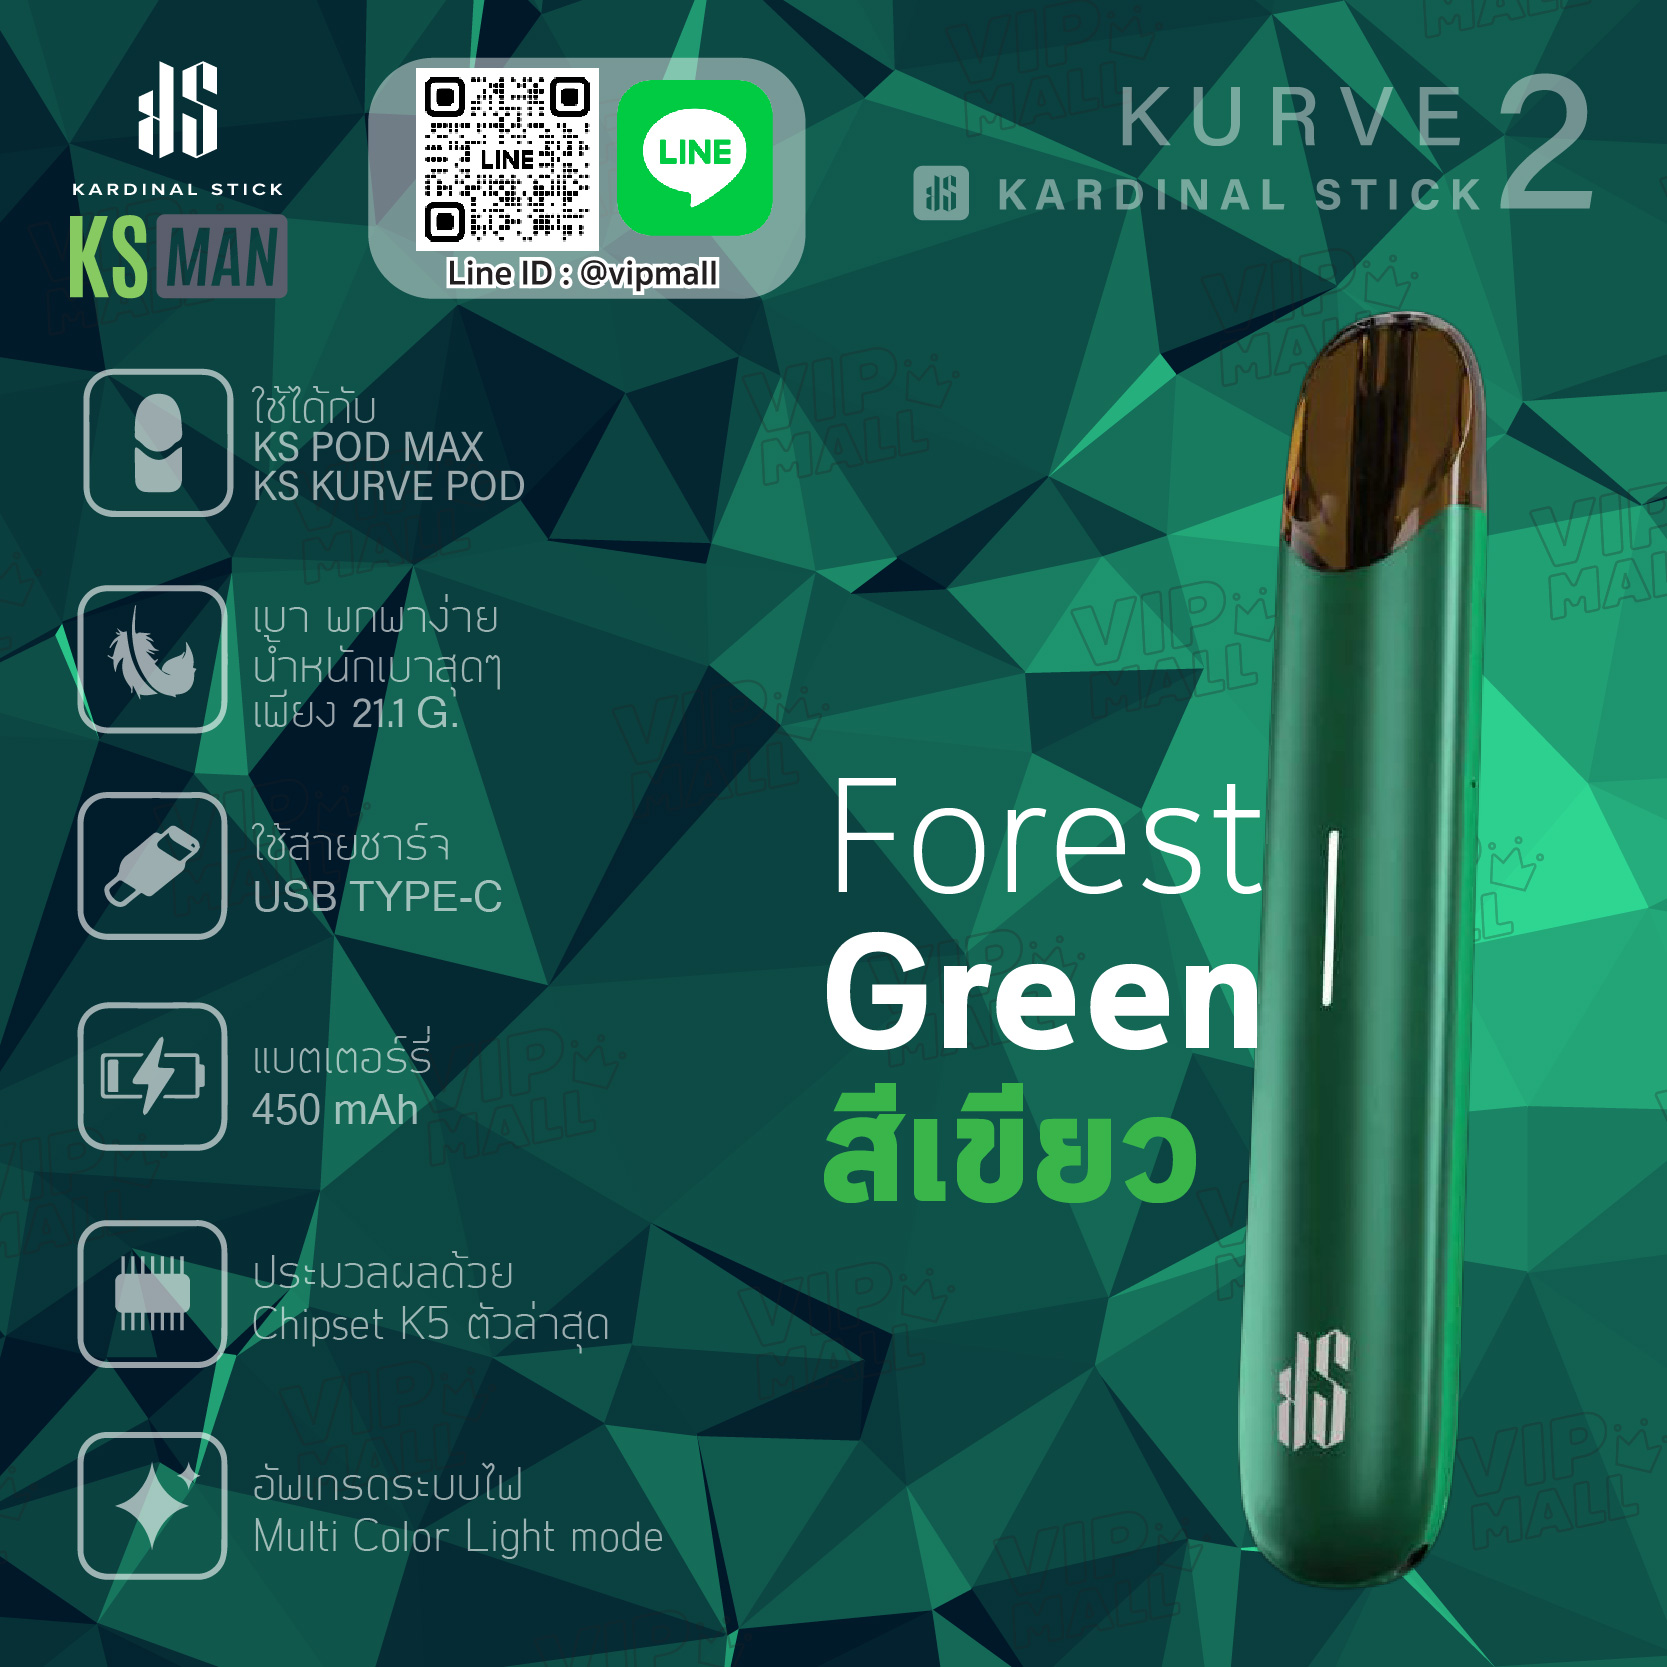 KS Kurve 2 สีเขียว Forest Green ออกแนว Metallic เข้ม ดูลึกลับ แต่ยังคงประสิทธิภาพภายในเหมือนเดิม ด้วย Chipset K5 ระบบไฟ Multicolor ที่แรก และที่เดียวในไทย